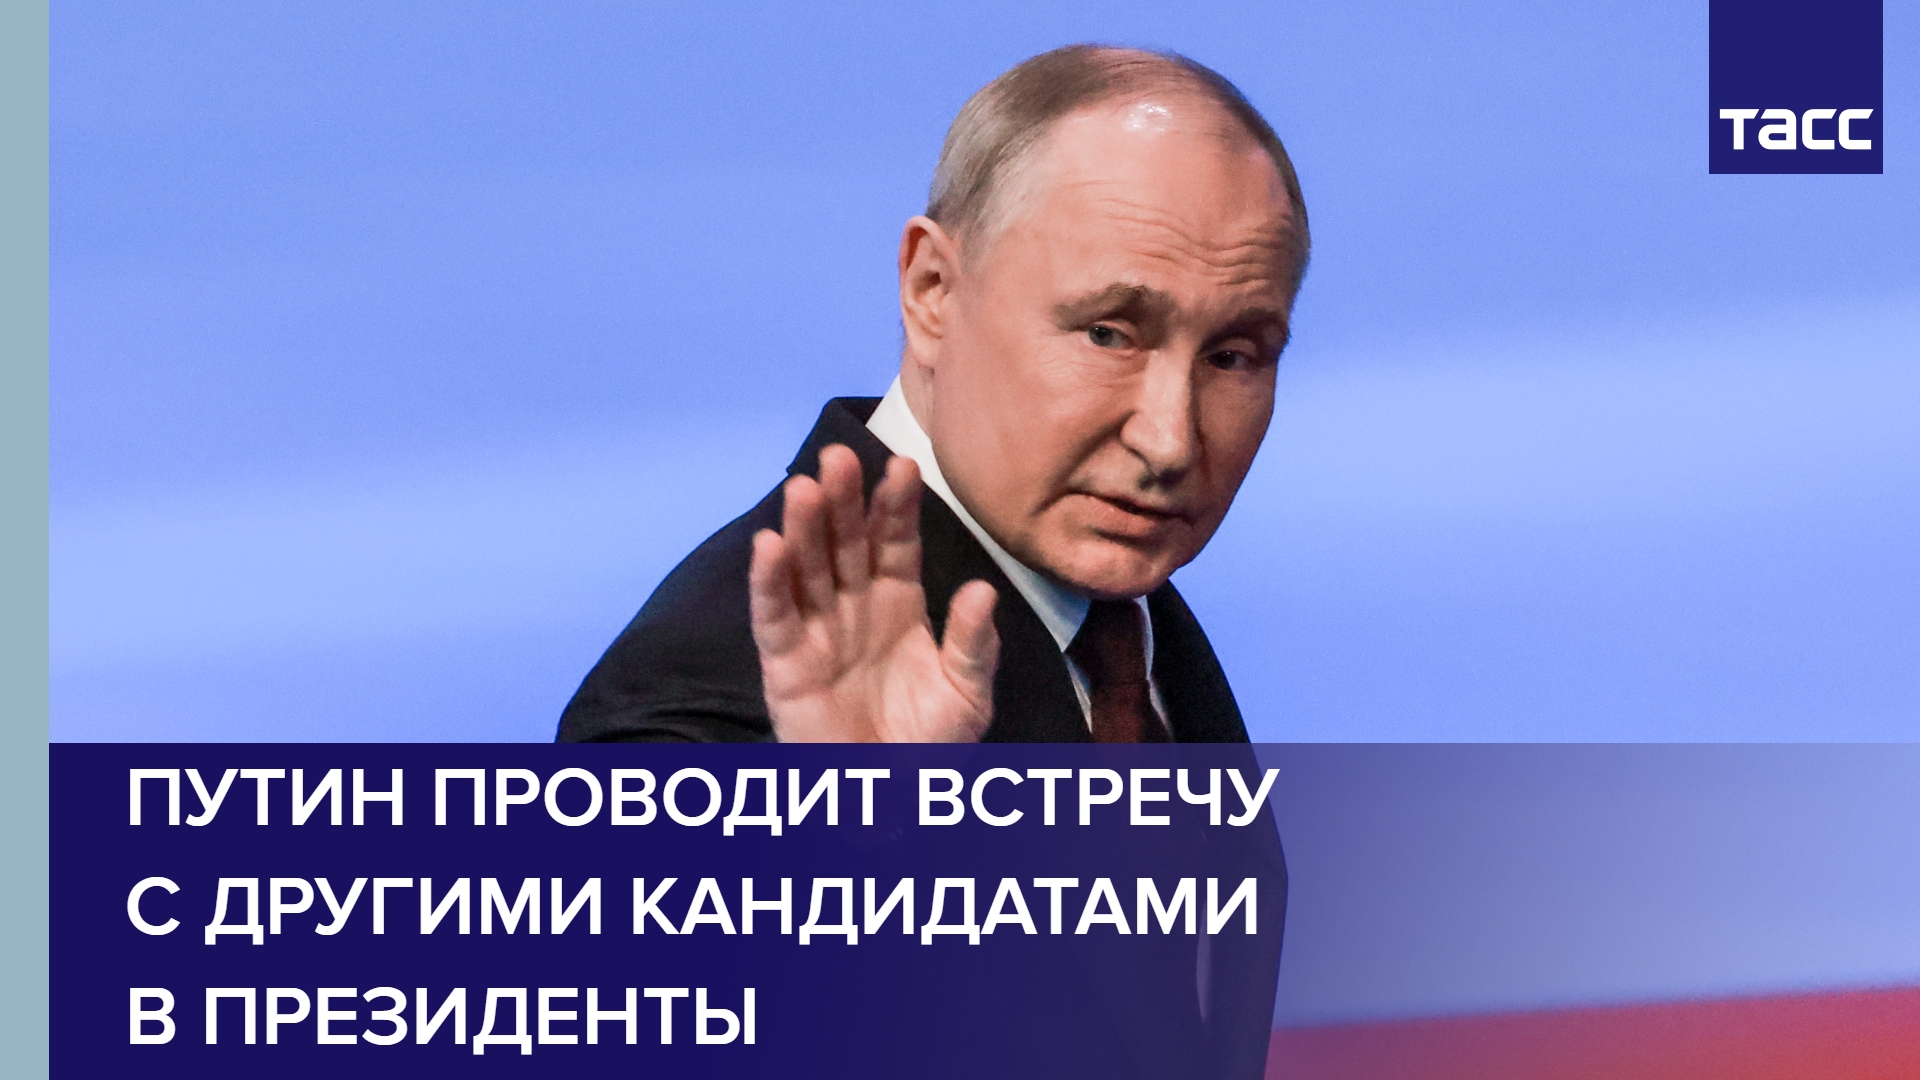 Путин проводит встречу с другими кандидатами в президенты